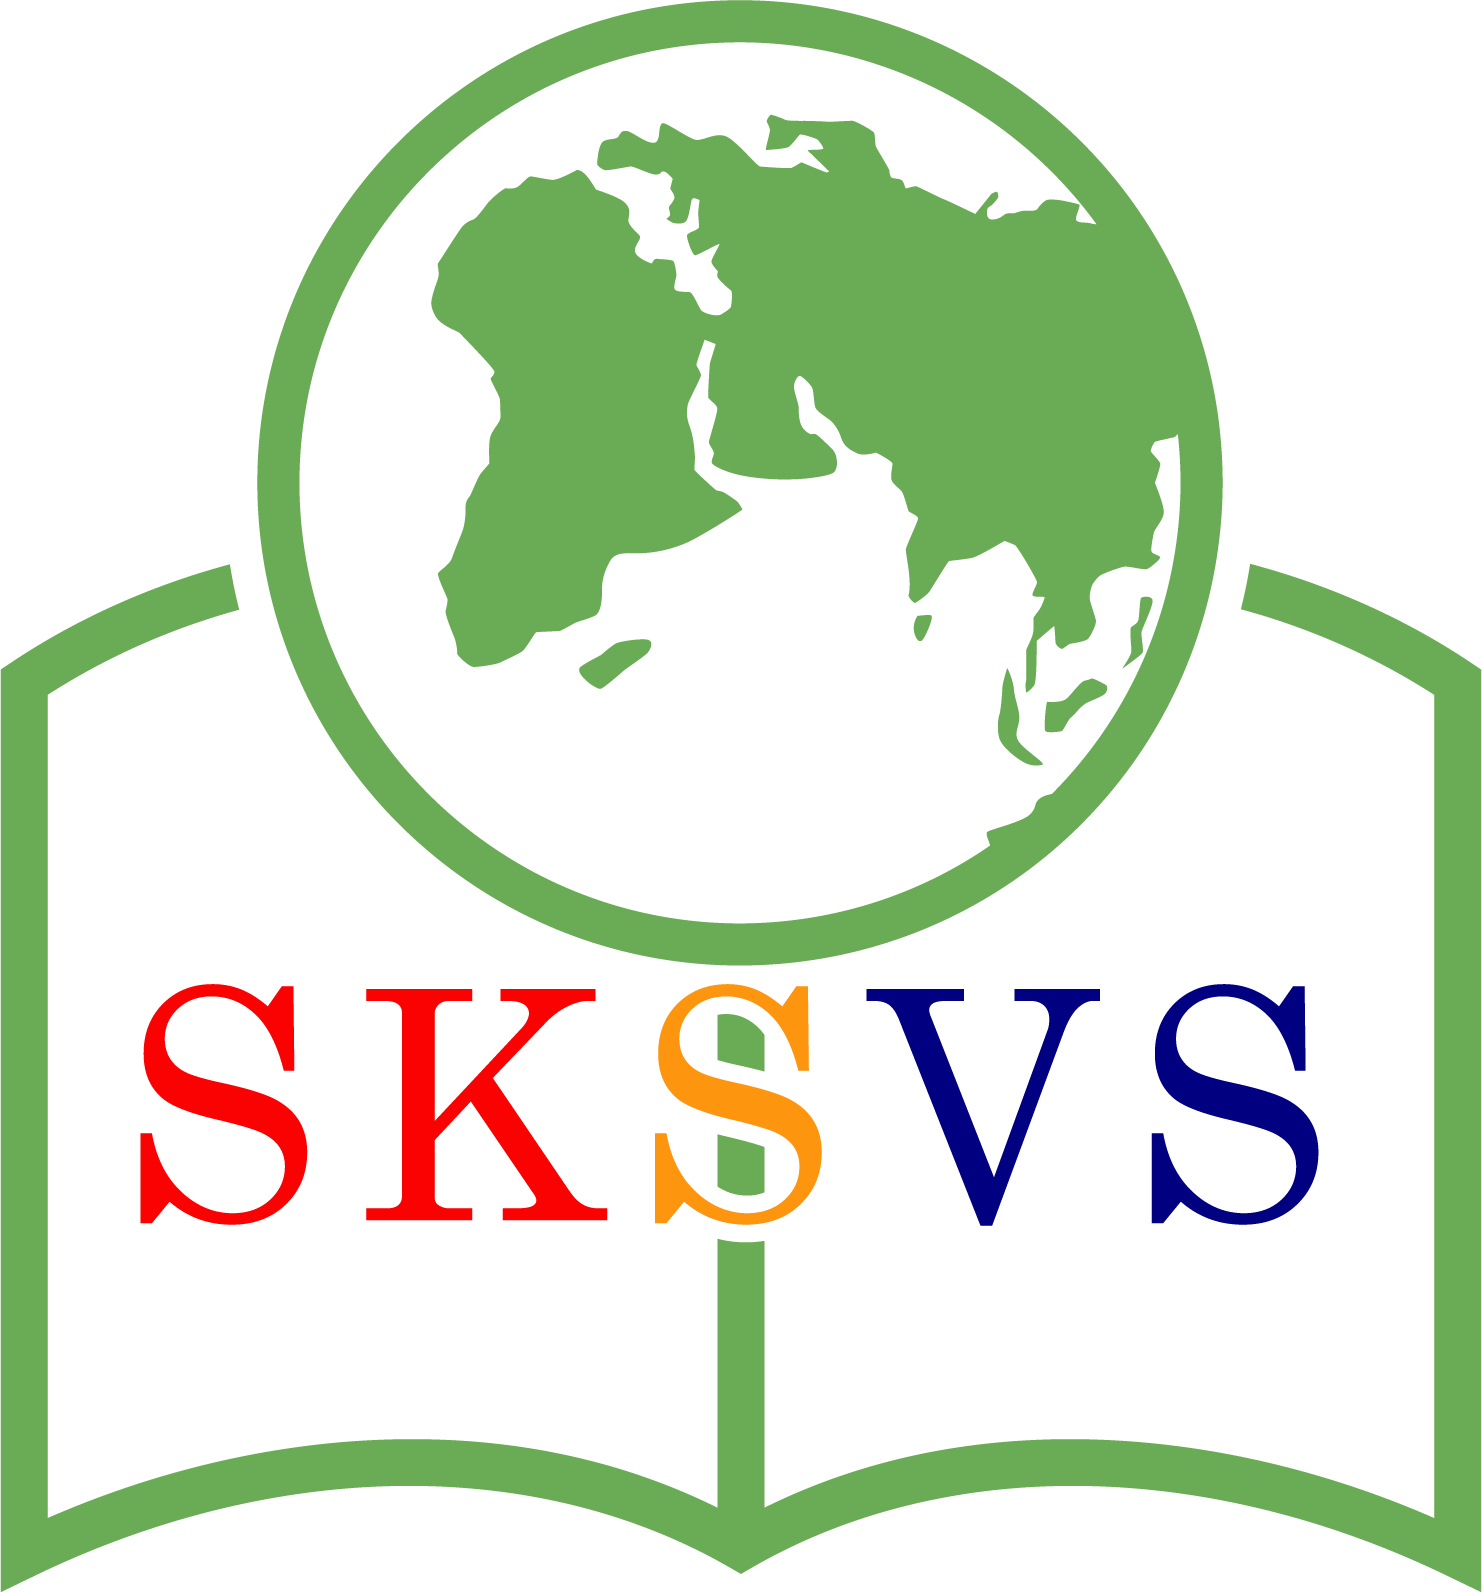 SKSVS – Slovenská škola vo svete